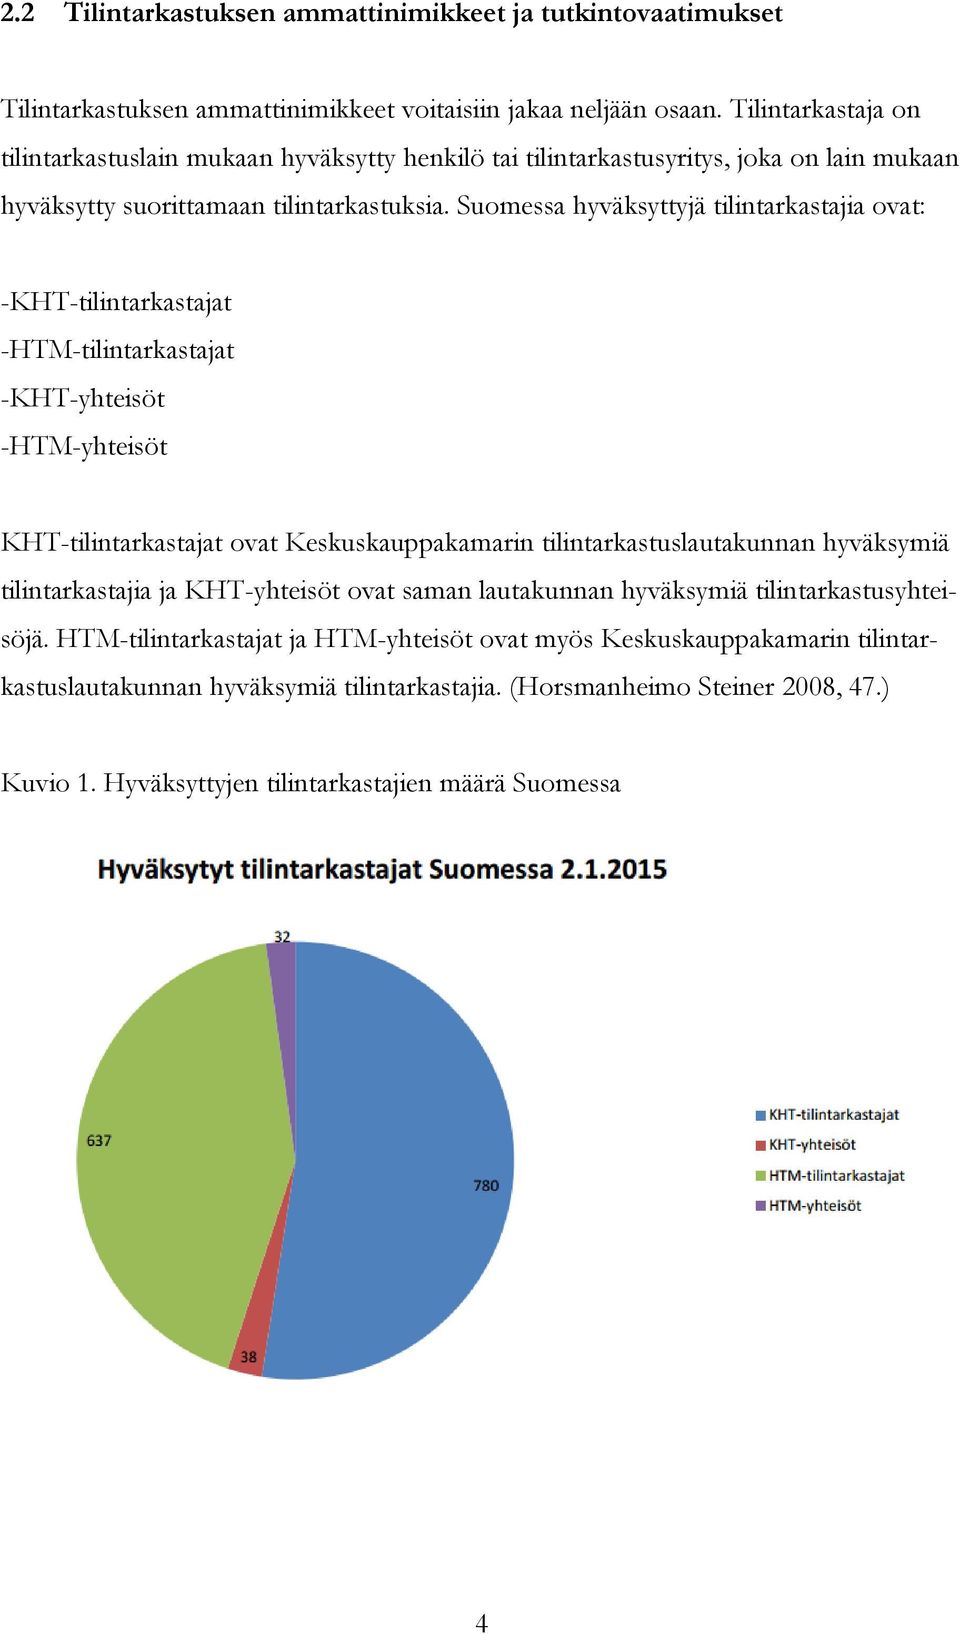 Suomessa hyväksyttyjä tilintarkastajia ovat: -KHT-tilintarkastajat -HTM-tilintarkastajat -KHT-yhteisöt -HTM-yhteisöt KHT-tilintarkastajat ovat Keskuskauppakamarin tilintarkastuslautakunnan